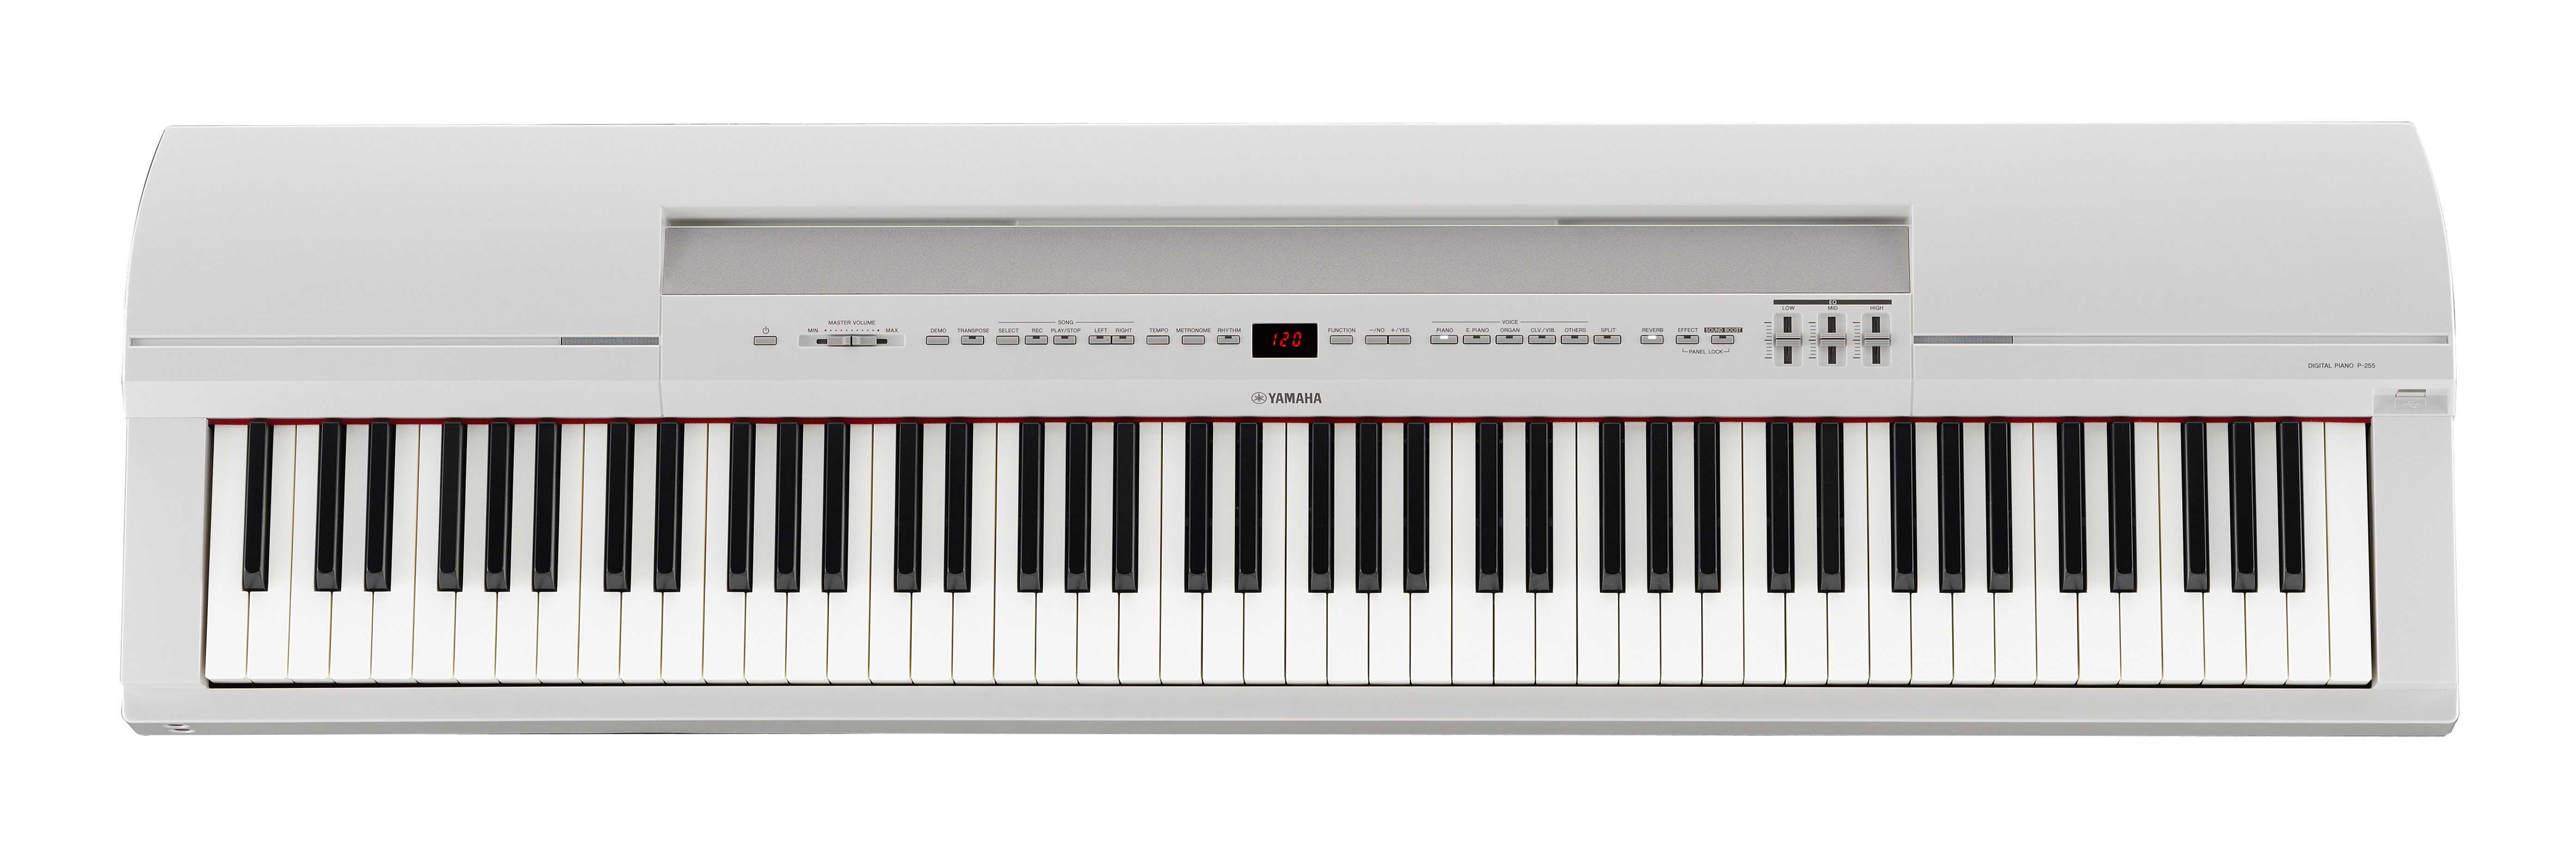 Чем отличается синтезатор от цифрового электронного пианино, что лучше в чем разница